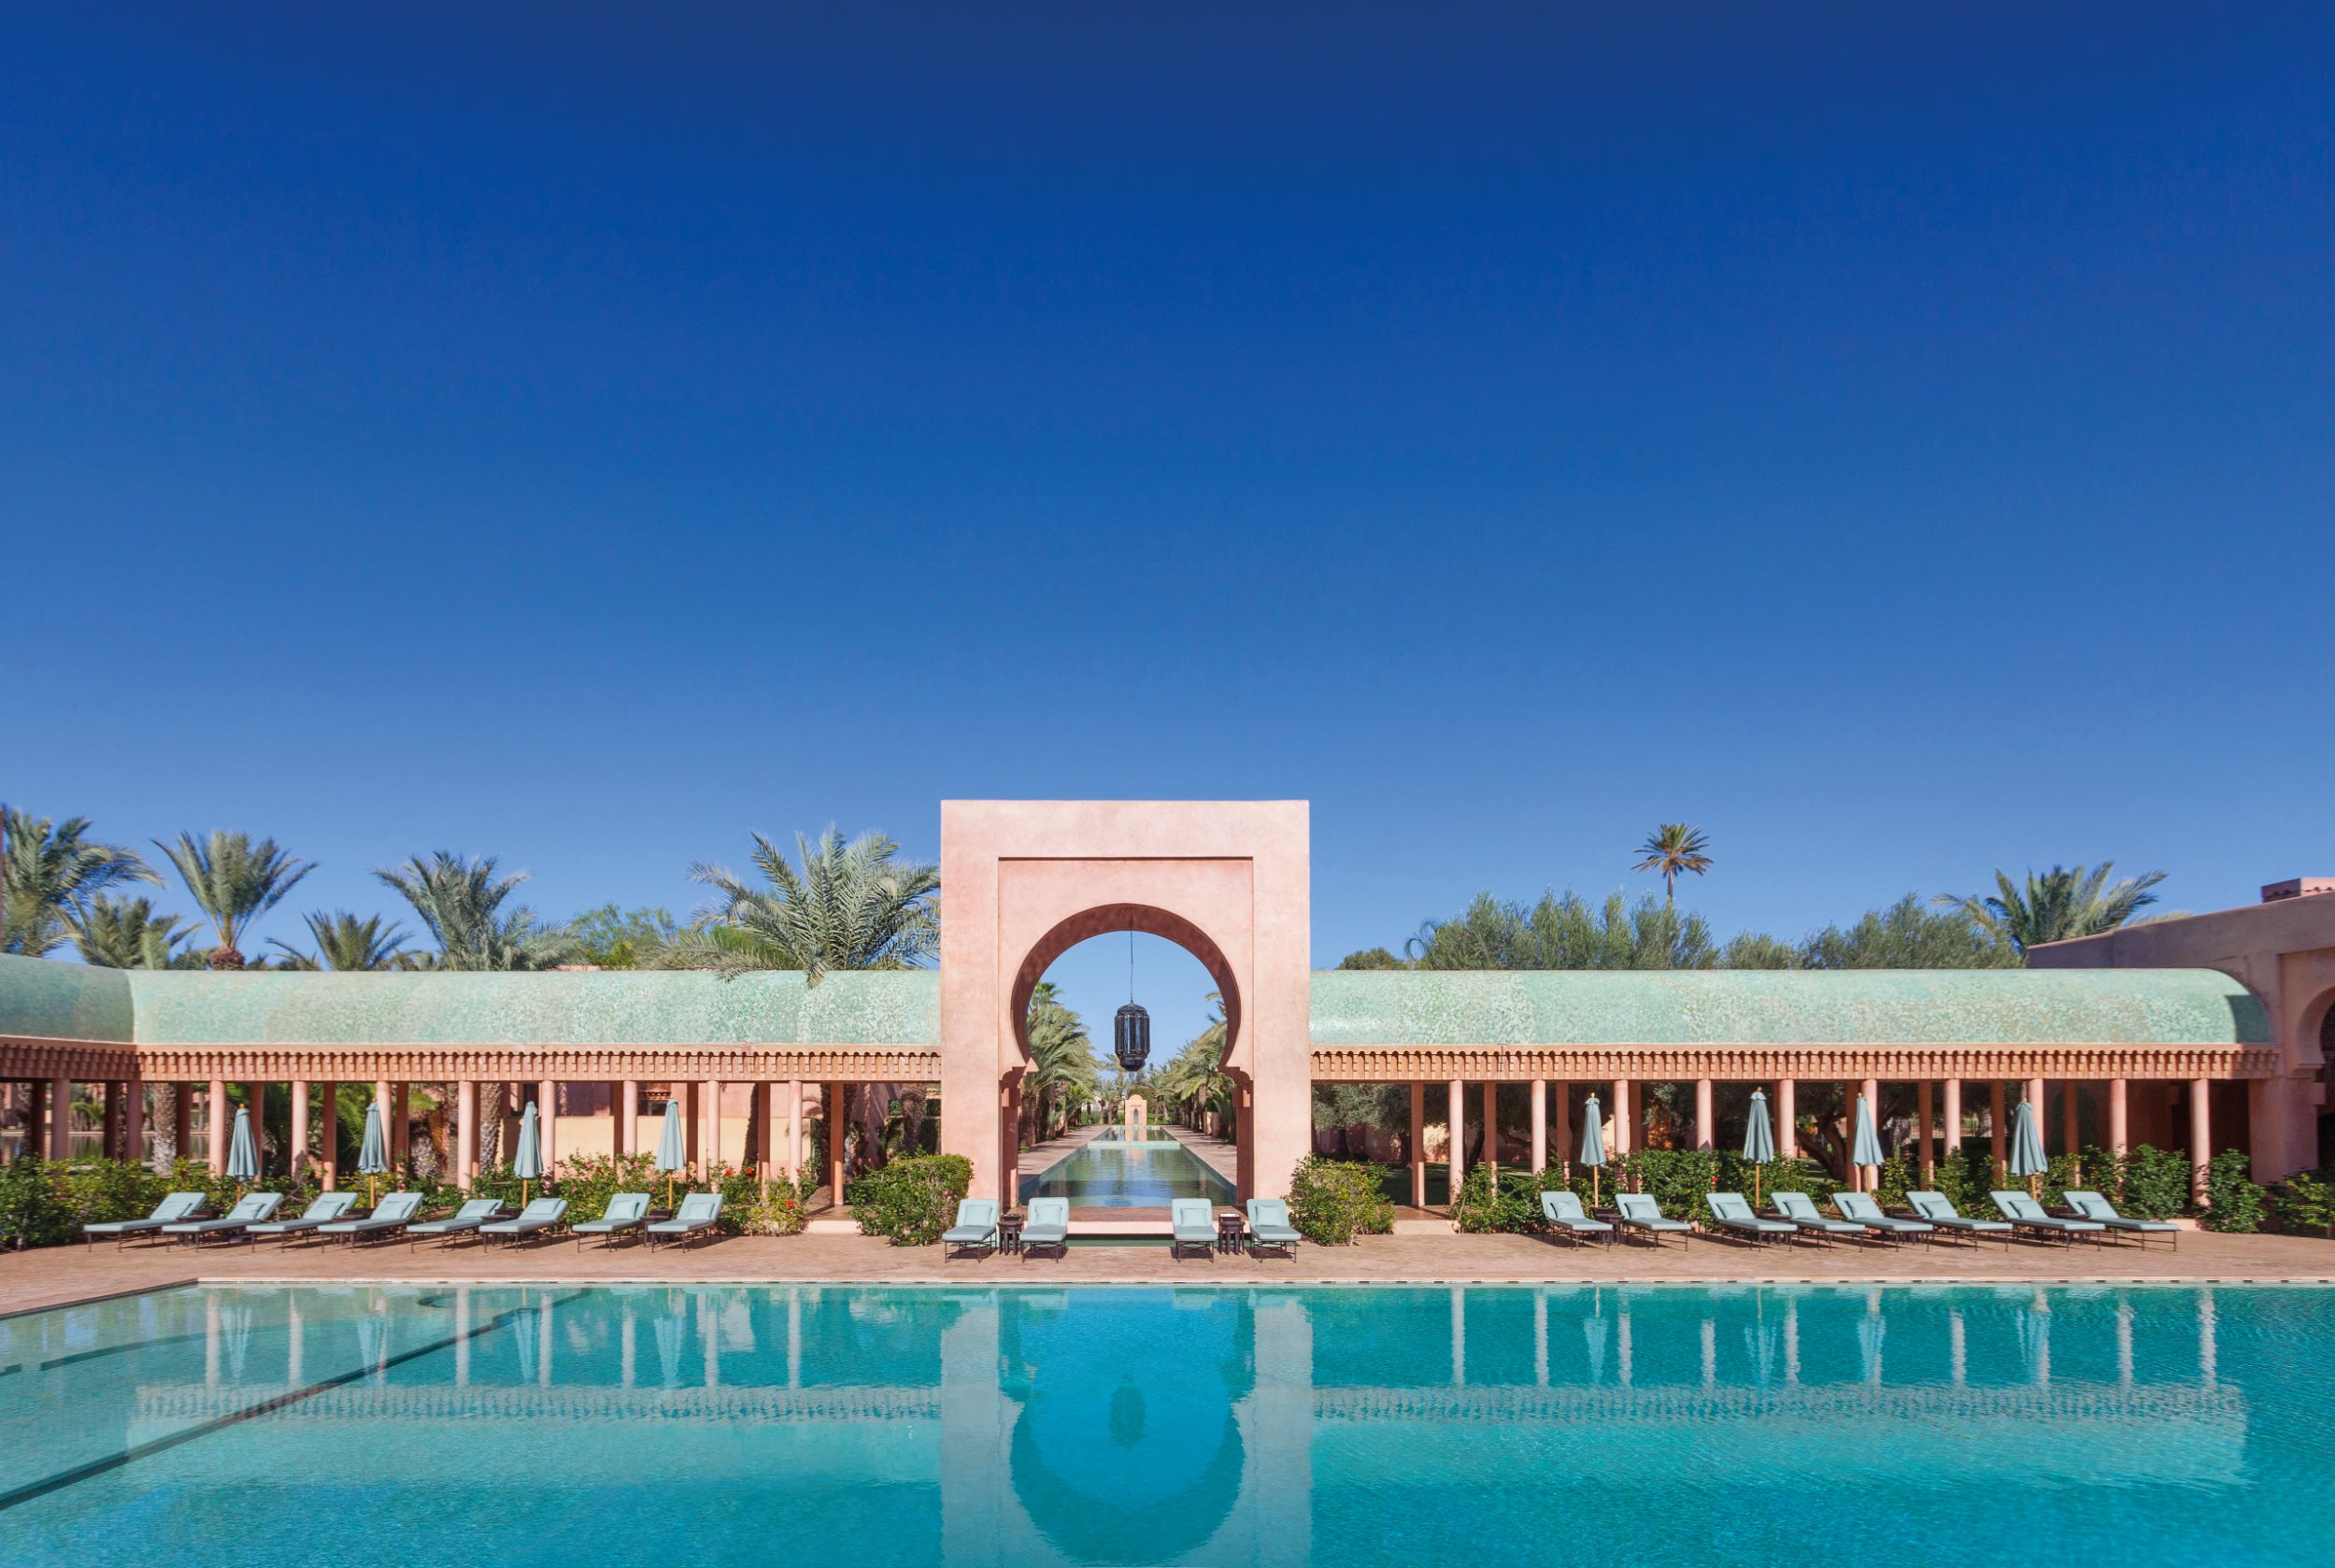 Amanjena 的粉紅宮殿取材於摩洛哥大城馬拉喀什的元素，襲在地傳統建築風格，同時注入現代氣息。